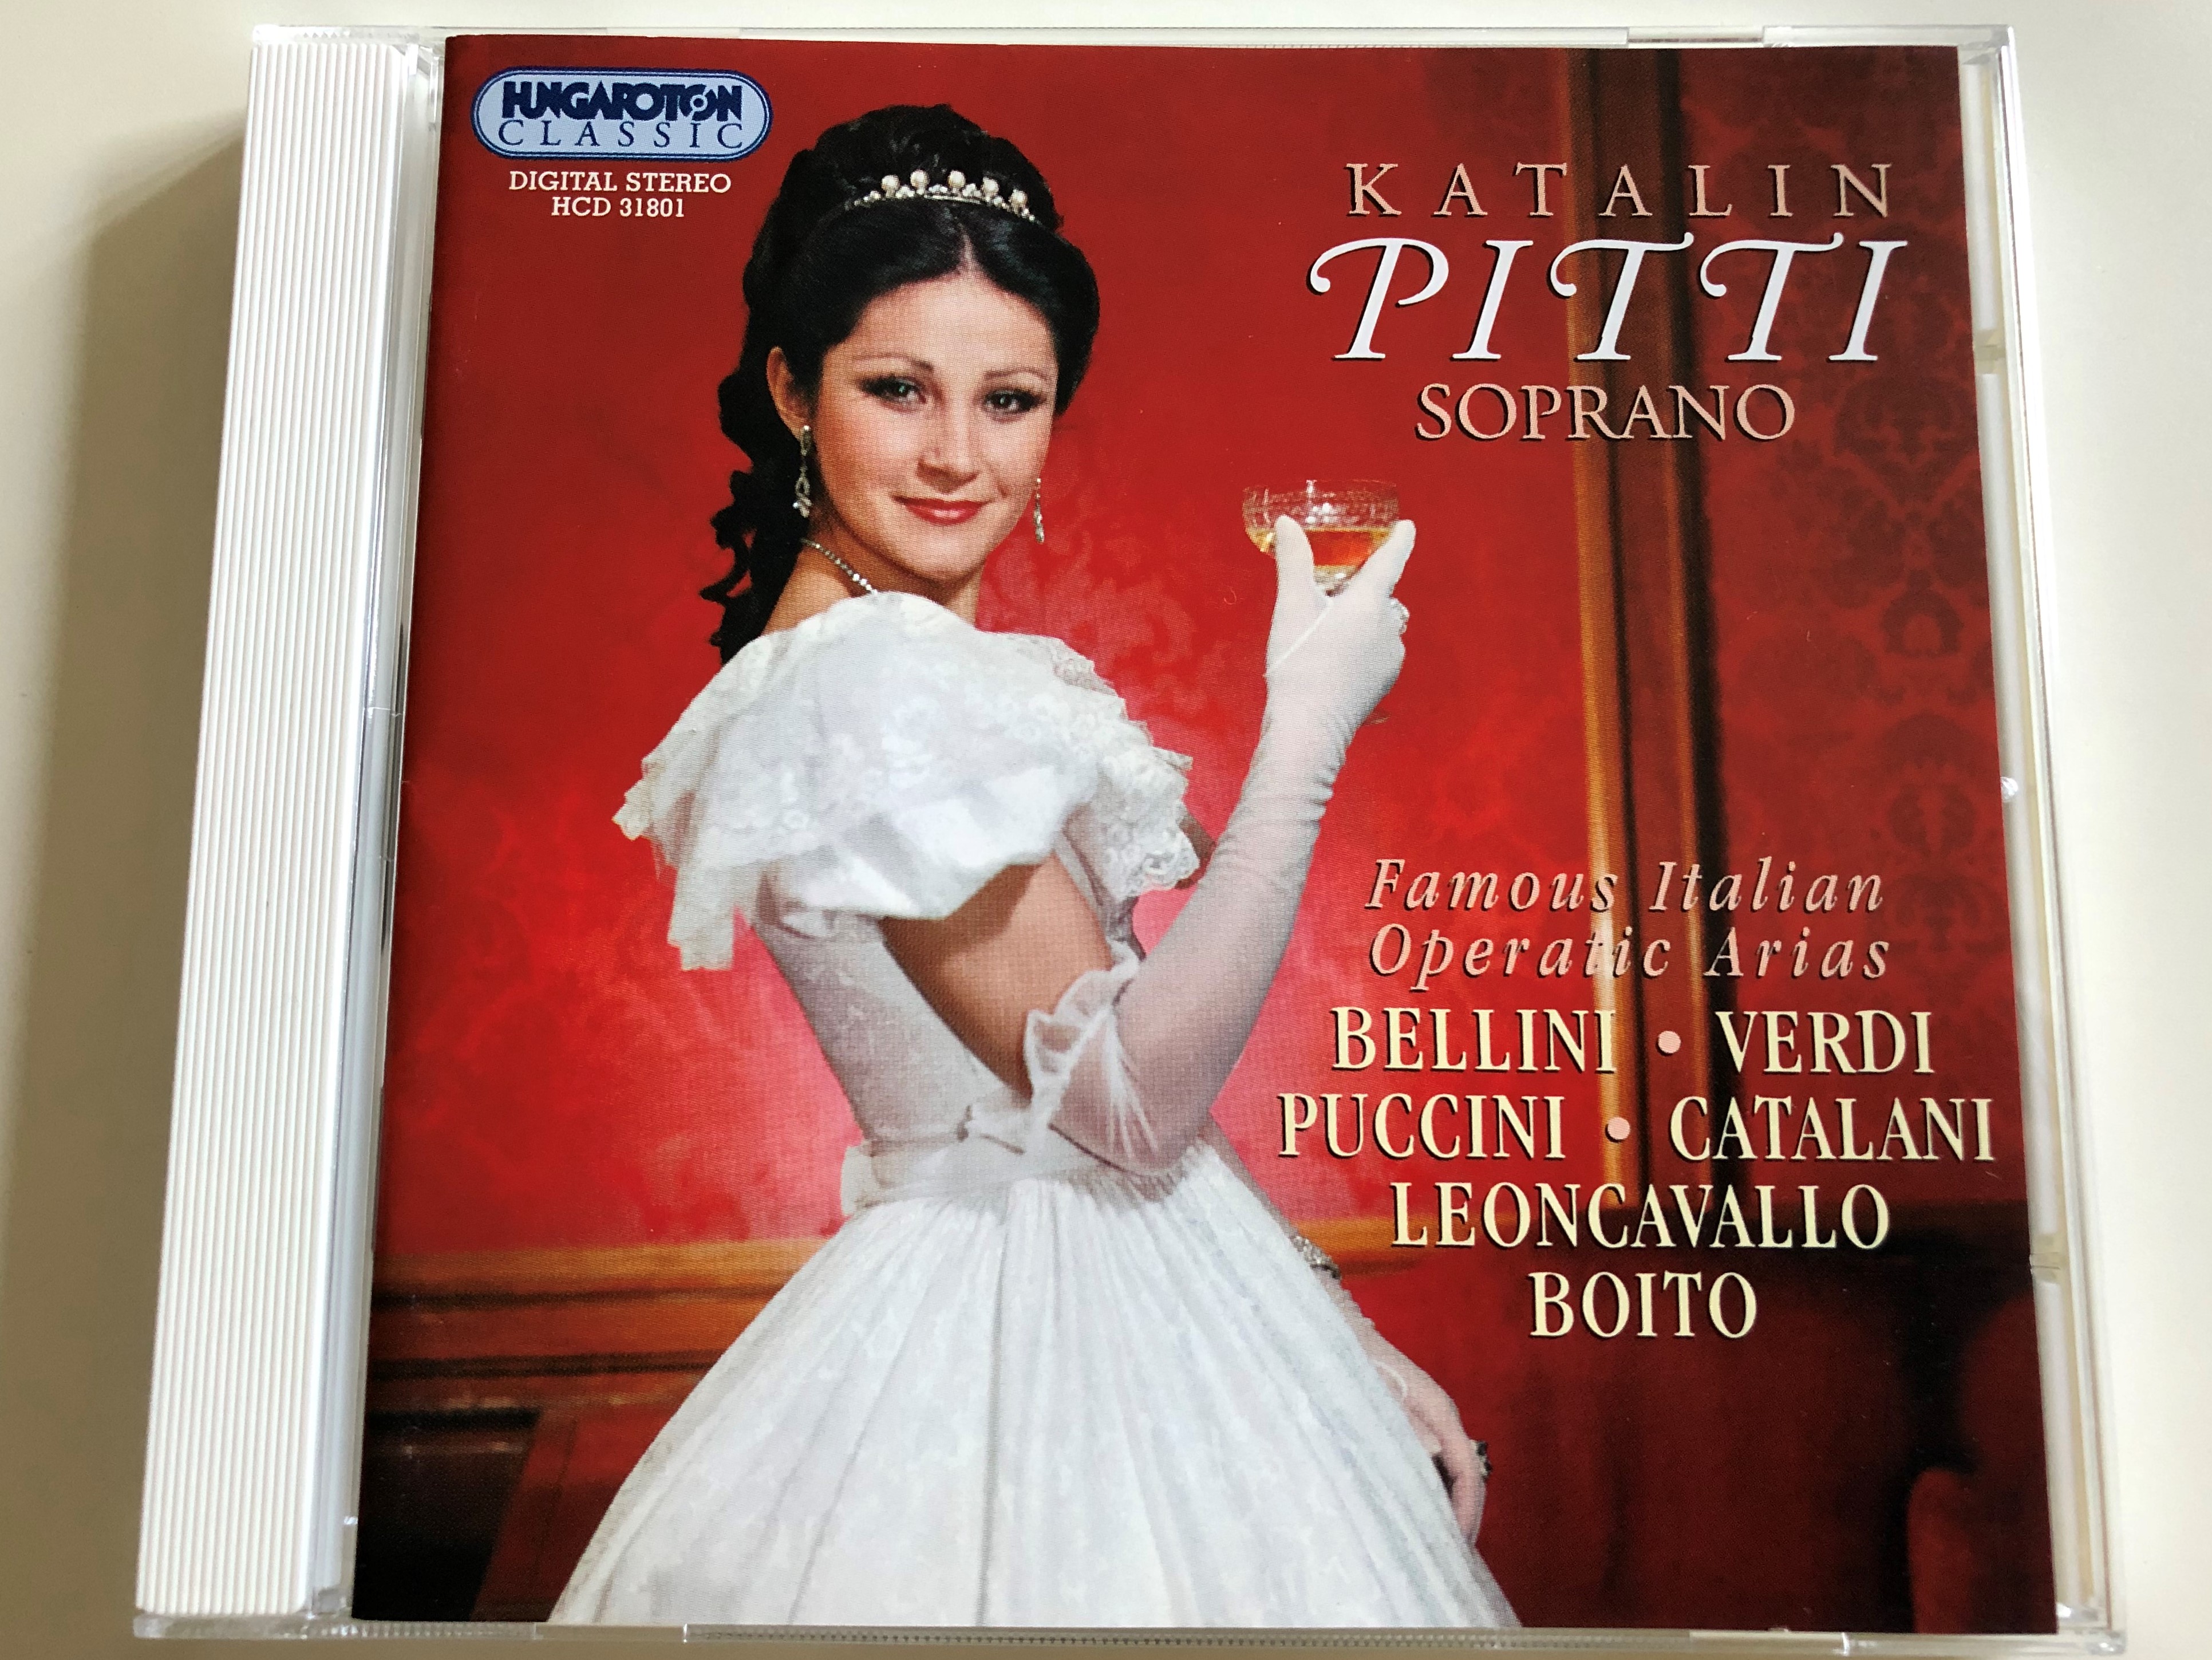 katalin-pitti-soprano-famous-italian-operatic-arias-bellini-verdi-puccini-catalani-leoncavallo-boito-audio-cd-1998-hungaroton-classic-hcd-31801-1-.jpg